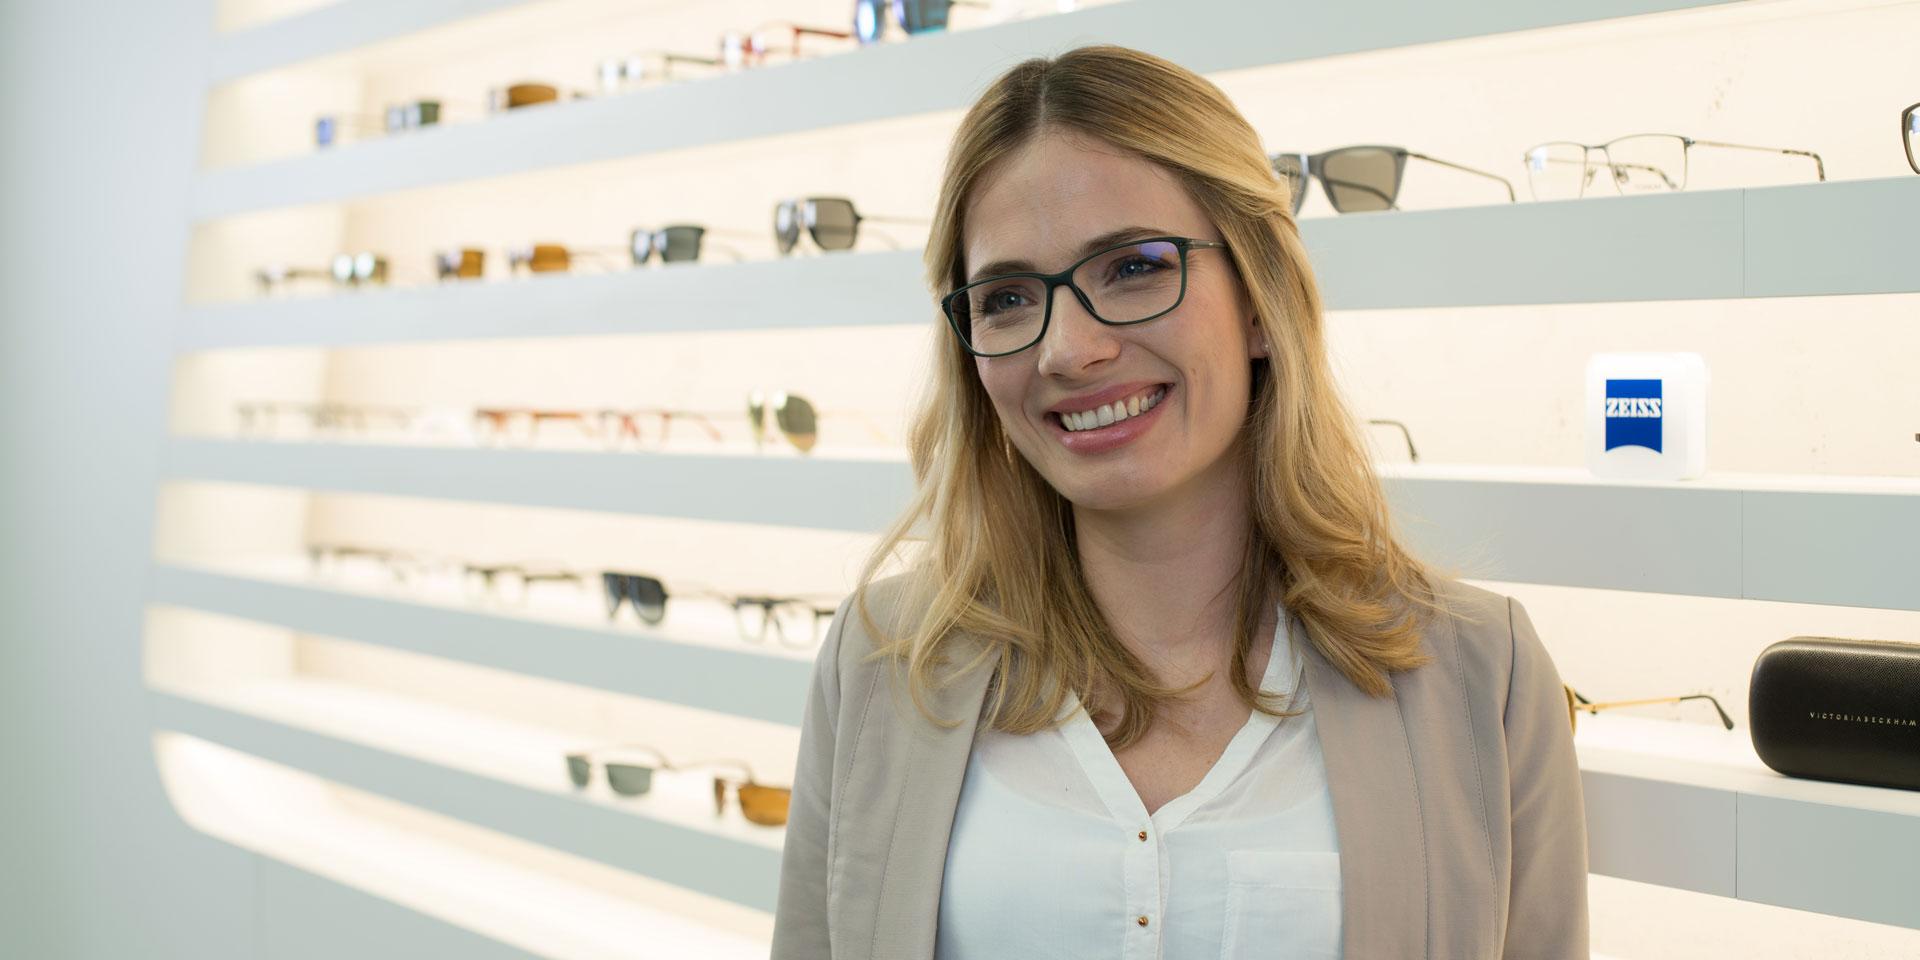 Tips for brillekjøpet: Slik finner du riktige briller